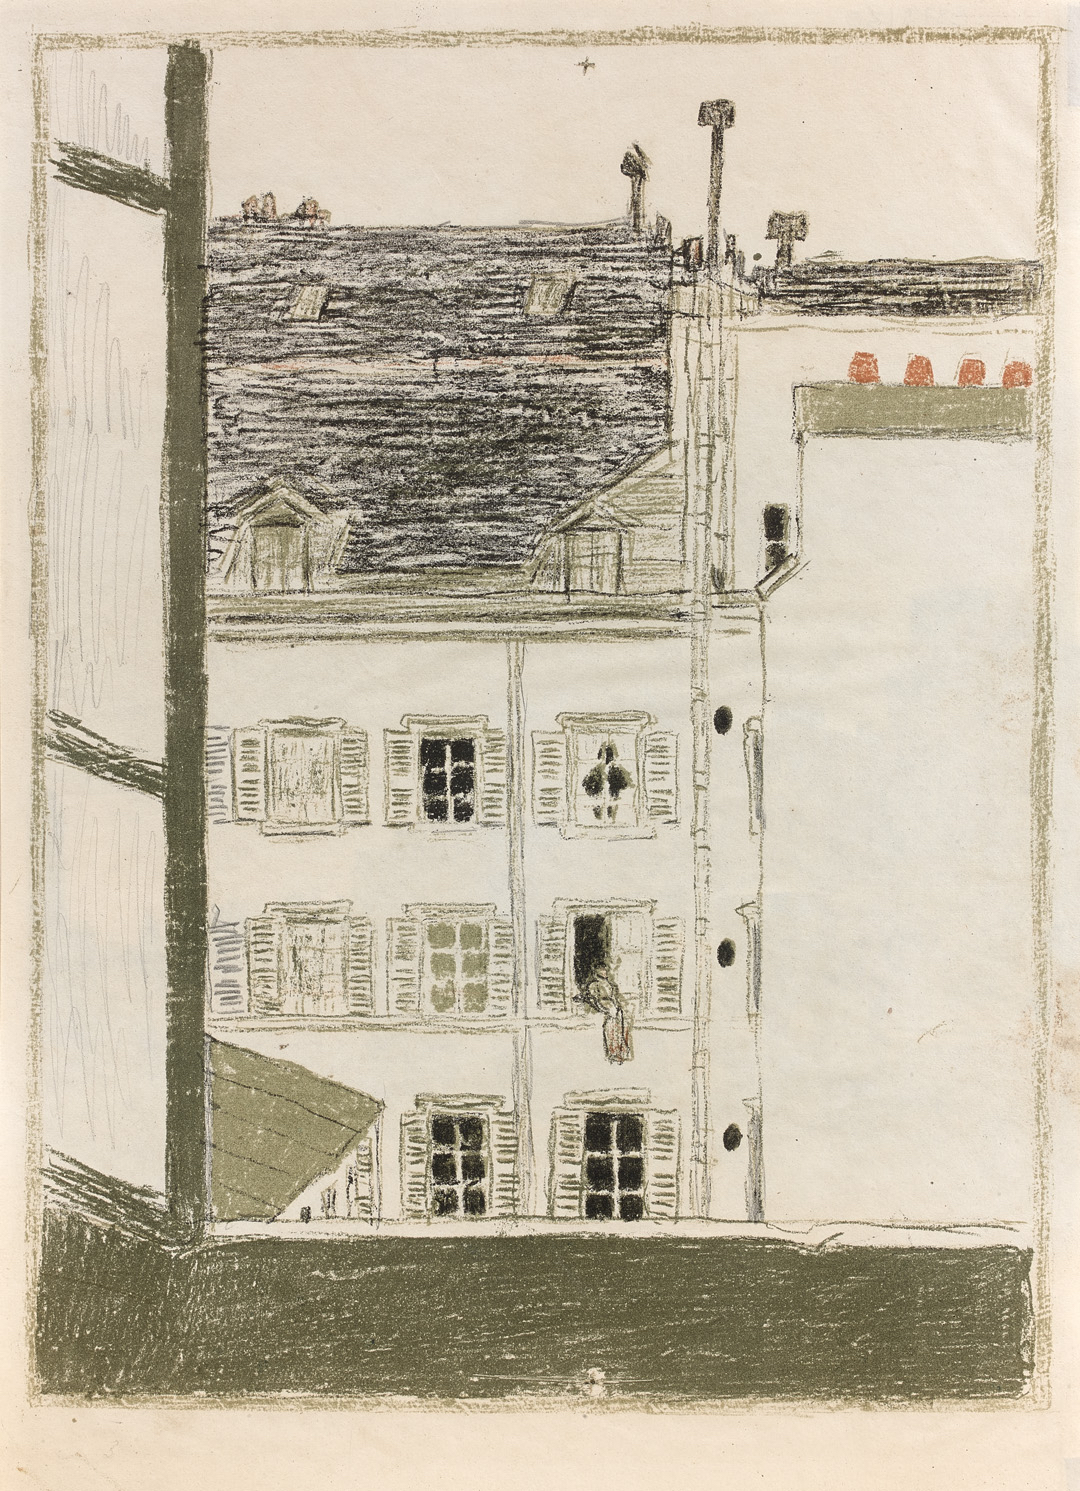 Bonnard, maison dans la Cour, color lithograph, 1899